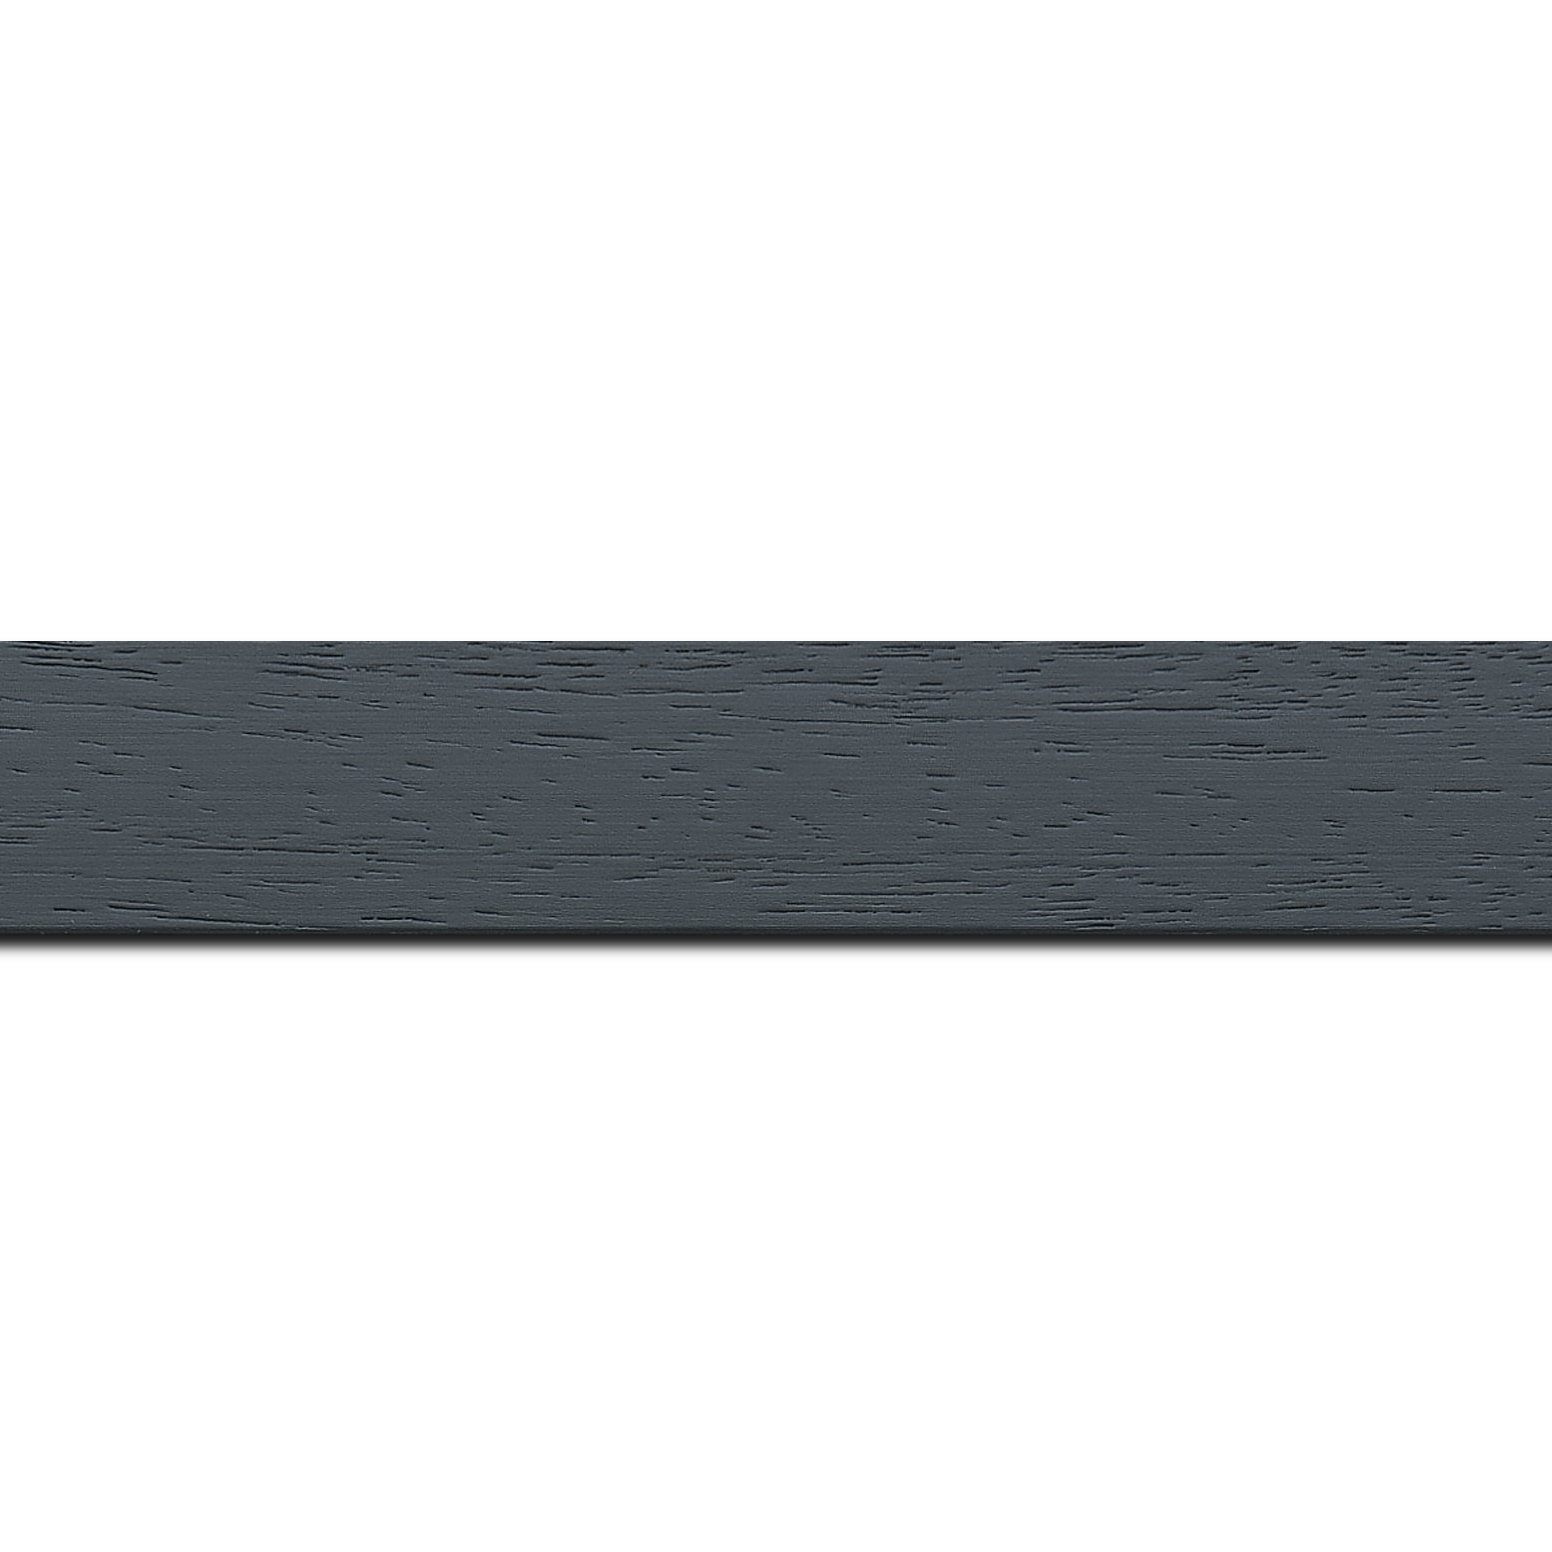 Pack par 12m, bois profil plat largeur 3cm couleur gris foncé satiné (longueur baguette pouvant varier entre 2.40m et 3m selon arrivage des bois)